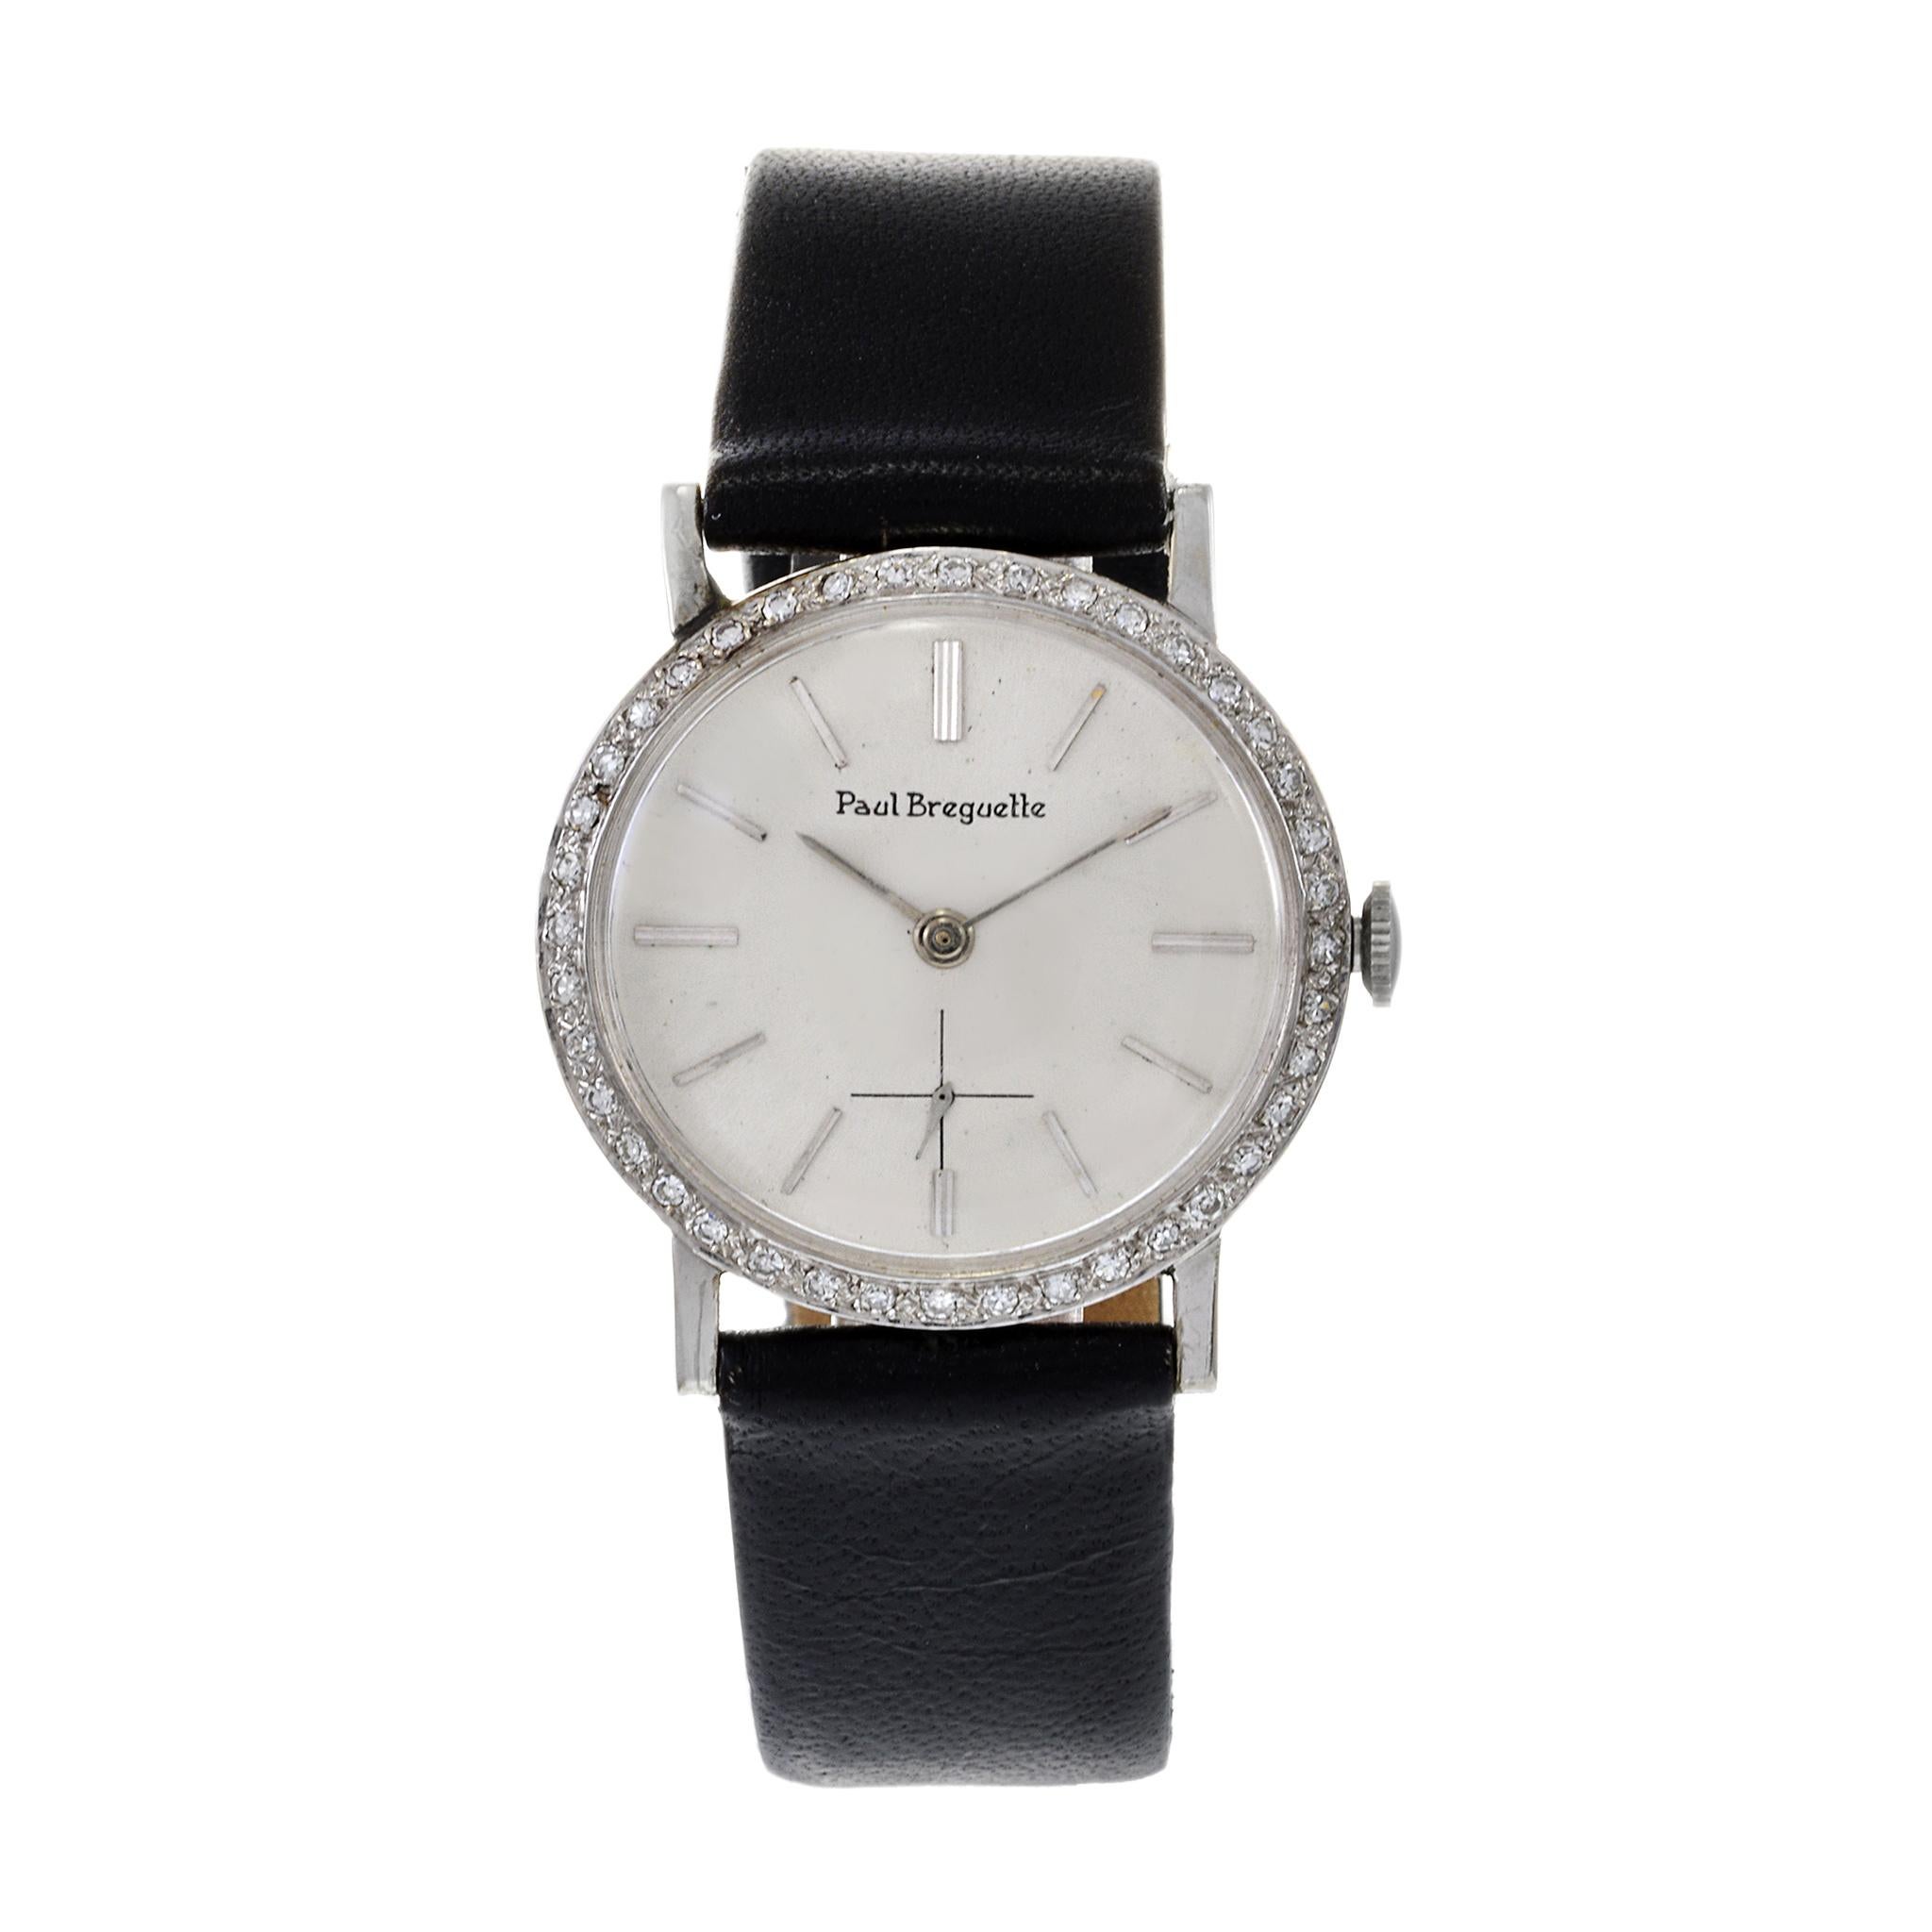 Paul Breguette war eine Tochtergesellschaft der Ebel Watch Company. Diese exquisite Armbanduhr aus den 1970er Jahren ist aus 14-karätigem Weißgold mit einer diamantbesetzten Lünette. Das Gesamtgewicht der Diamanten beträgt 0,60CT TDW. Diese Uhr wird